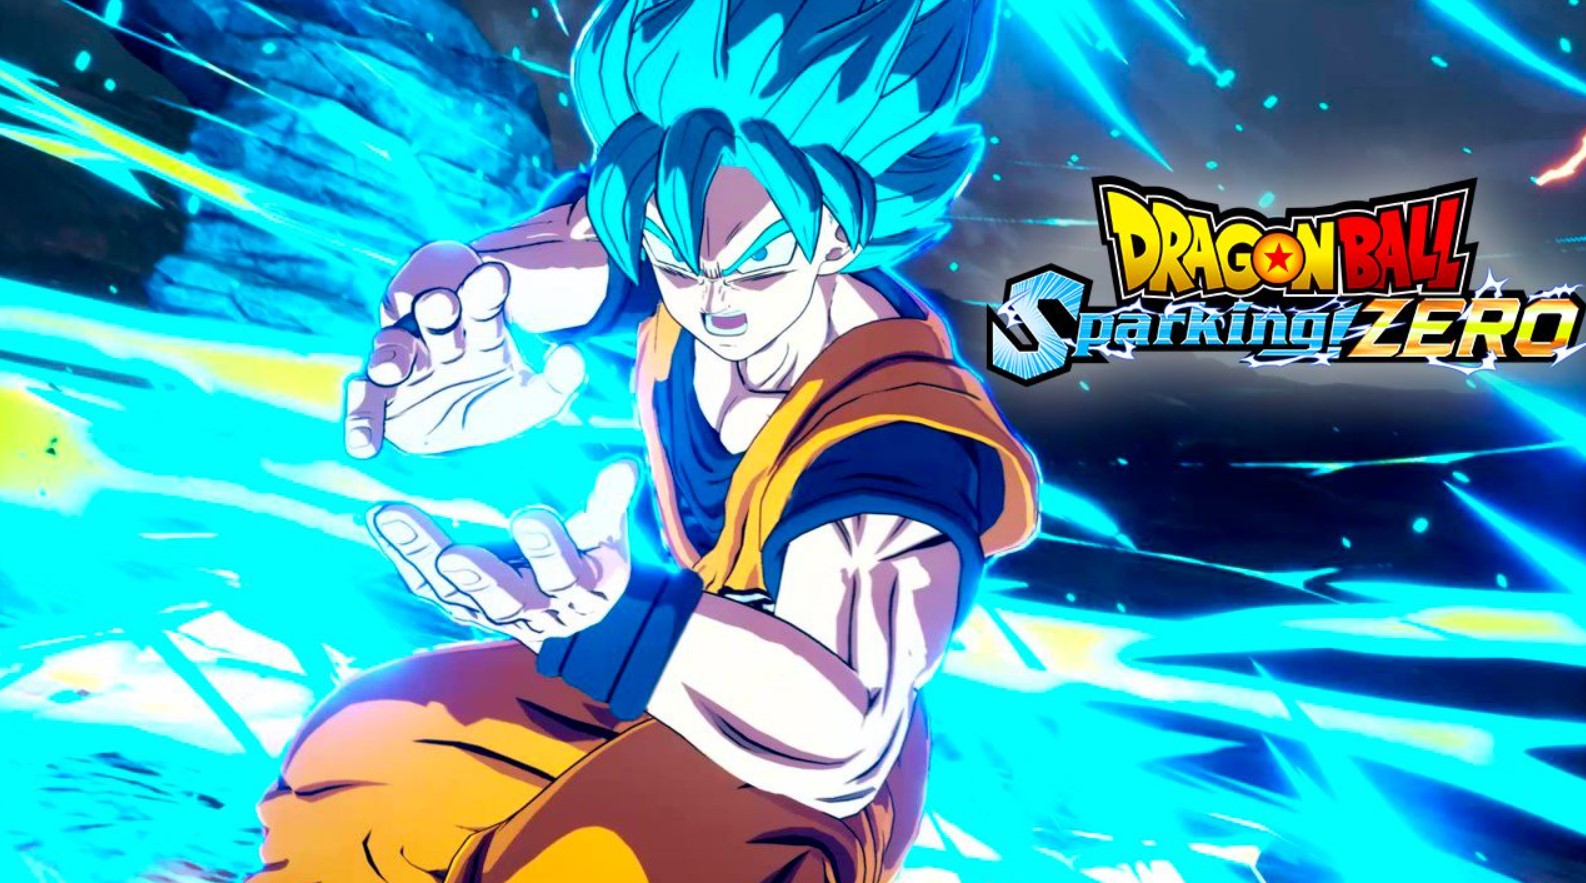  Sparking! ZERO Game Terbaru untuk Para Pecinta Anime dan Penggemar Dragon Ball